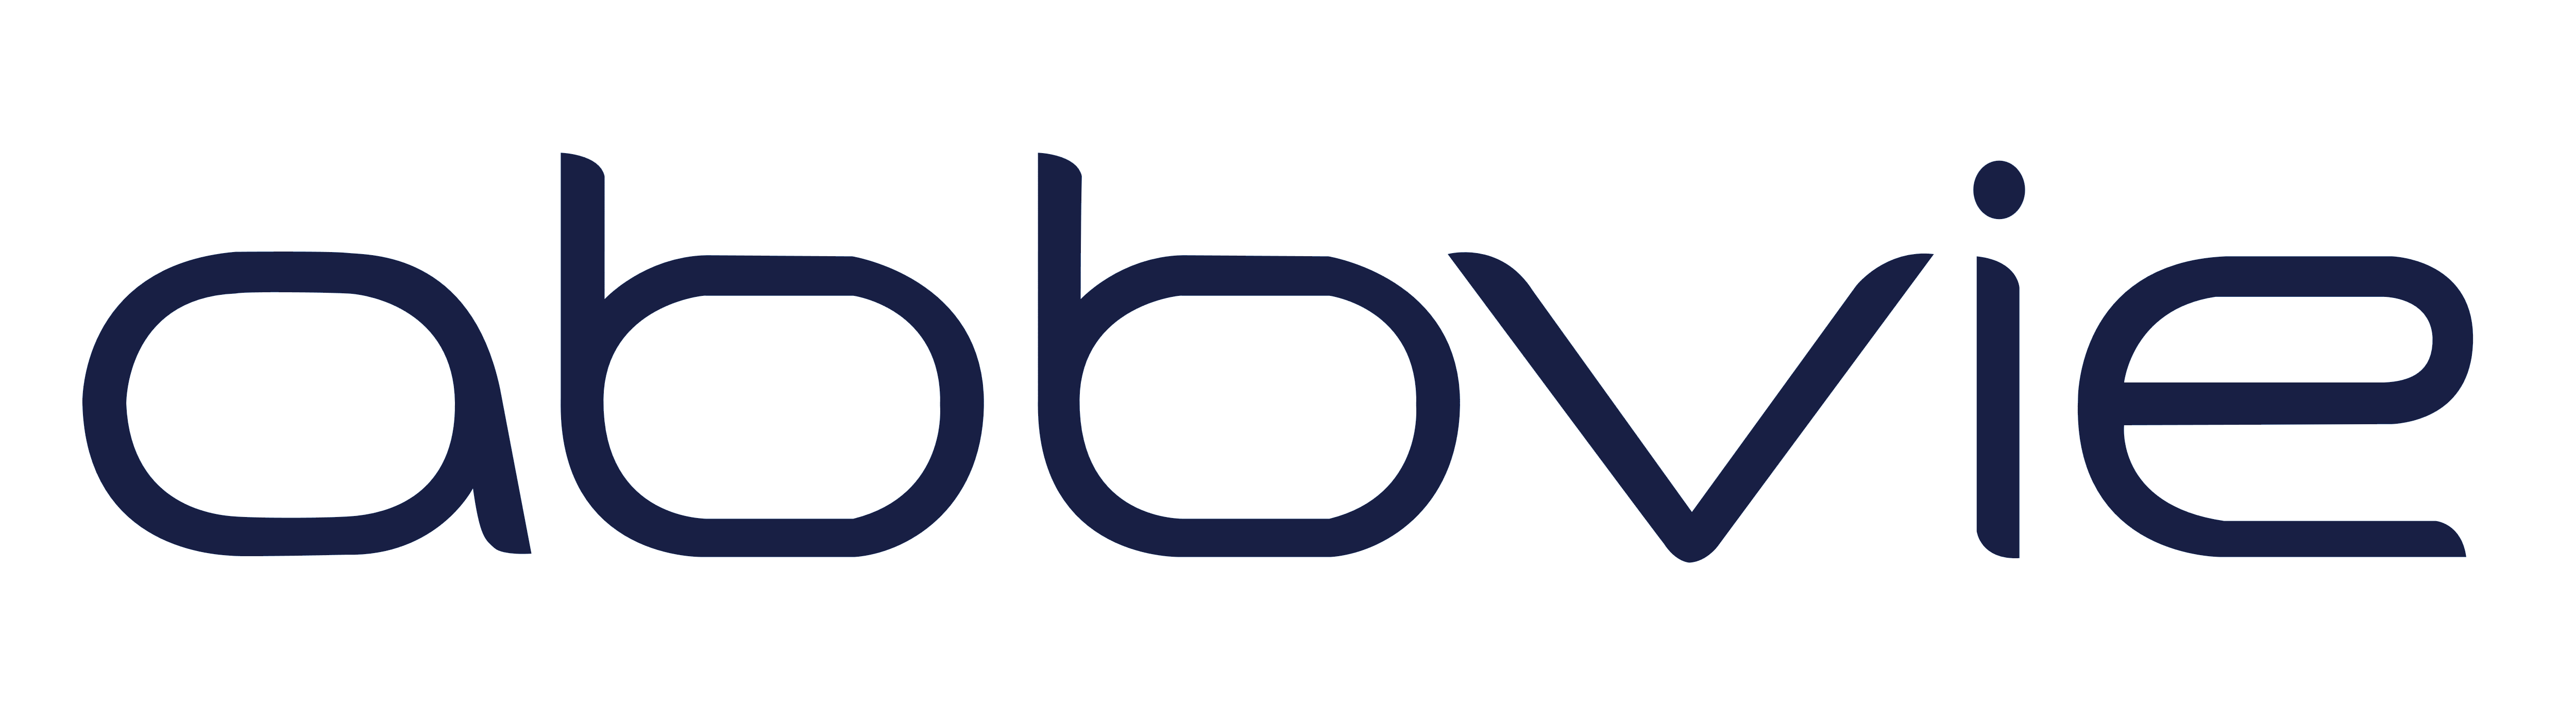 AbbVie logo, logotype